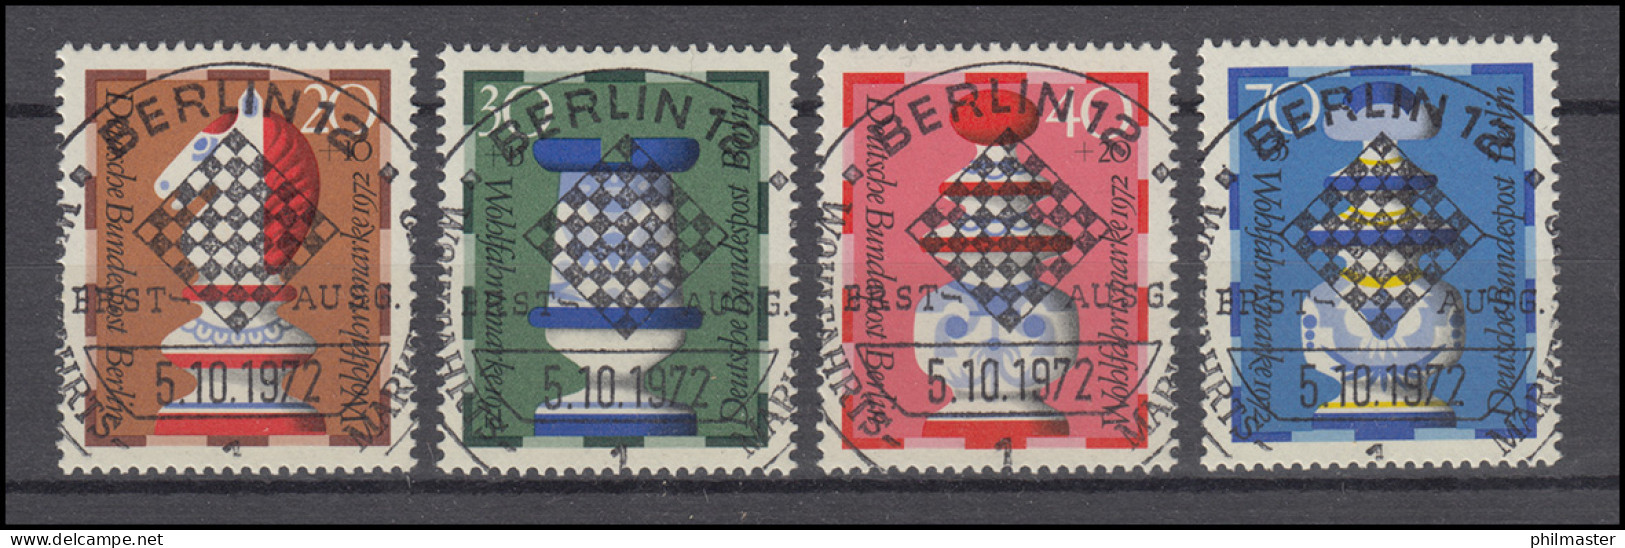 435-438 Wofa Schachfiguren 1972 - Satz Mit Vollstempel ESSt BERLIN 5.10.72 - Oblitérés